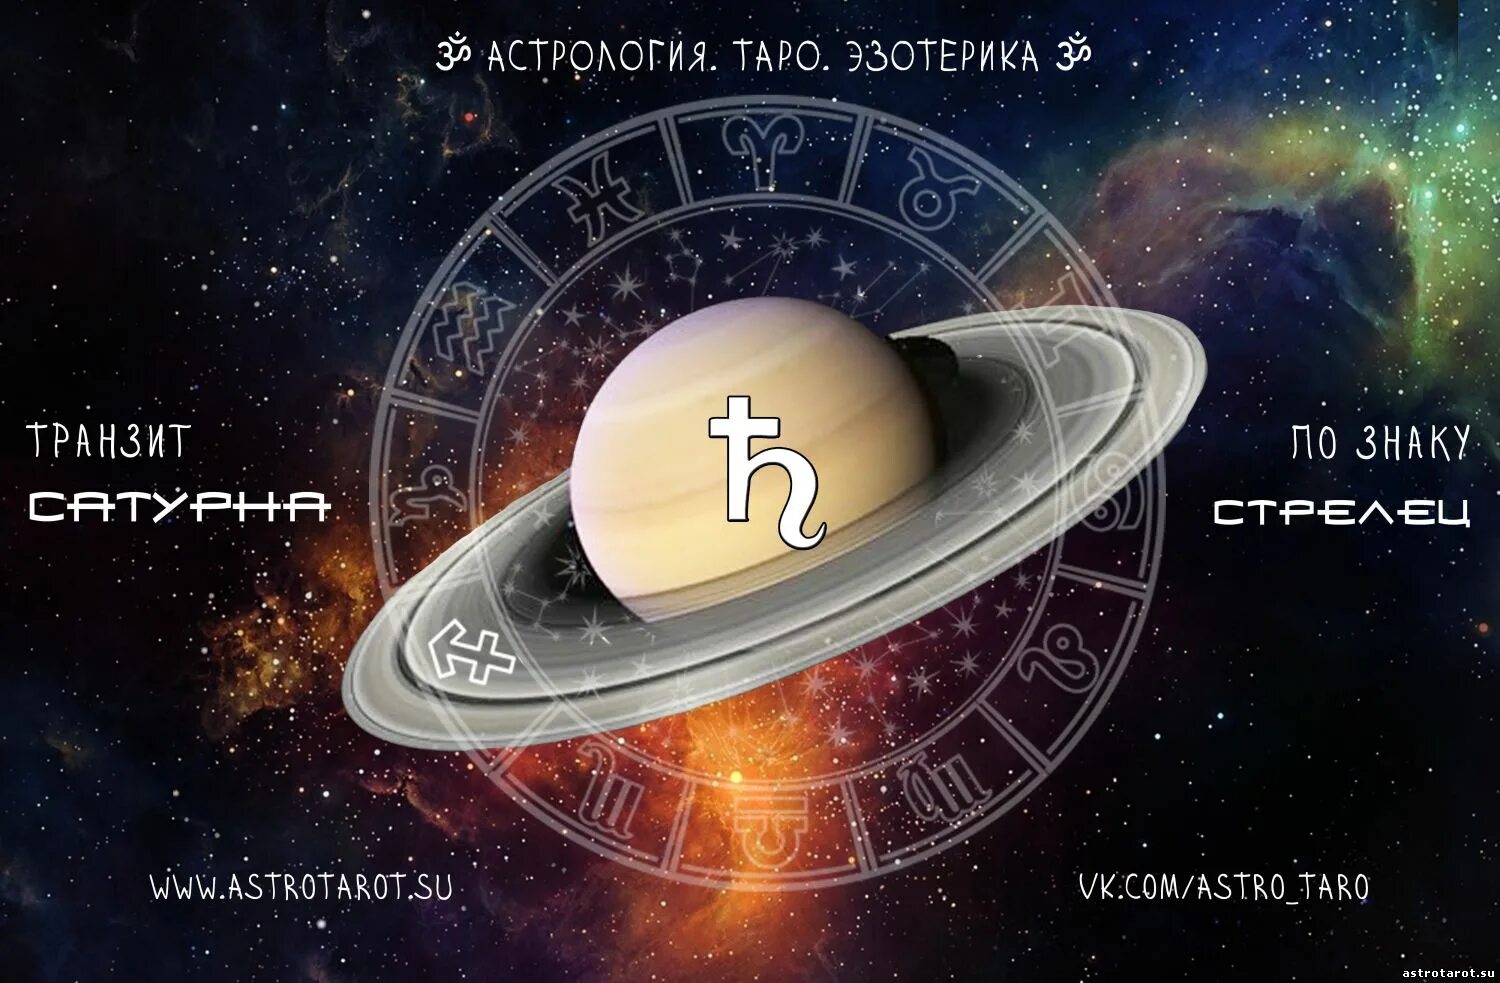 Сатурн в астрологии. Сатурн Планета в астрологии. Символ Сатурна в астрологии. Сатурн Планета астрология символы.